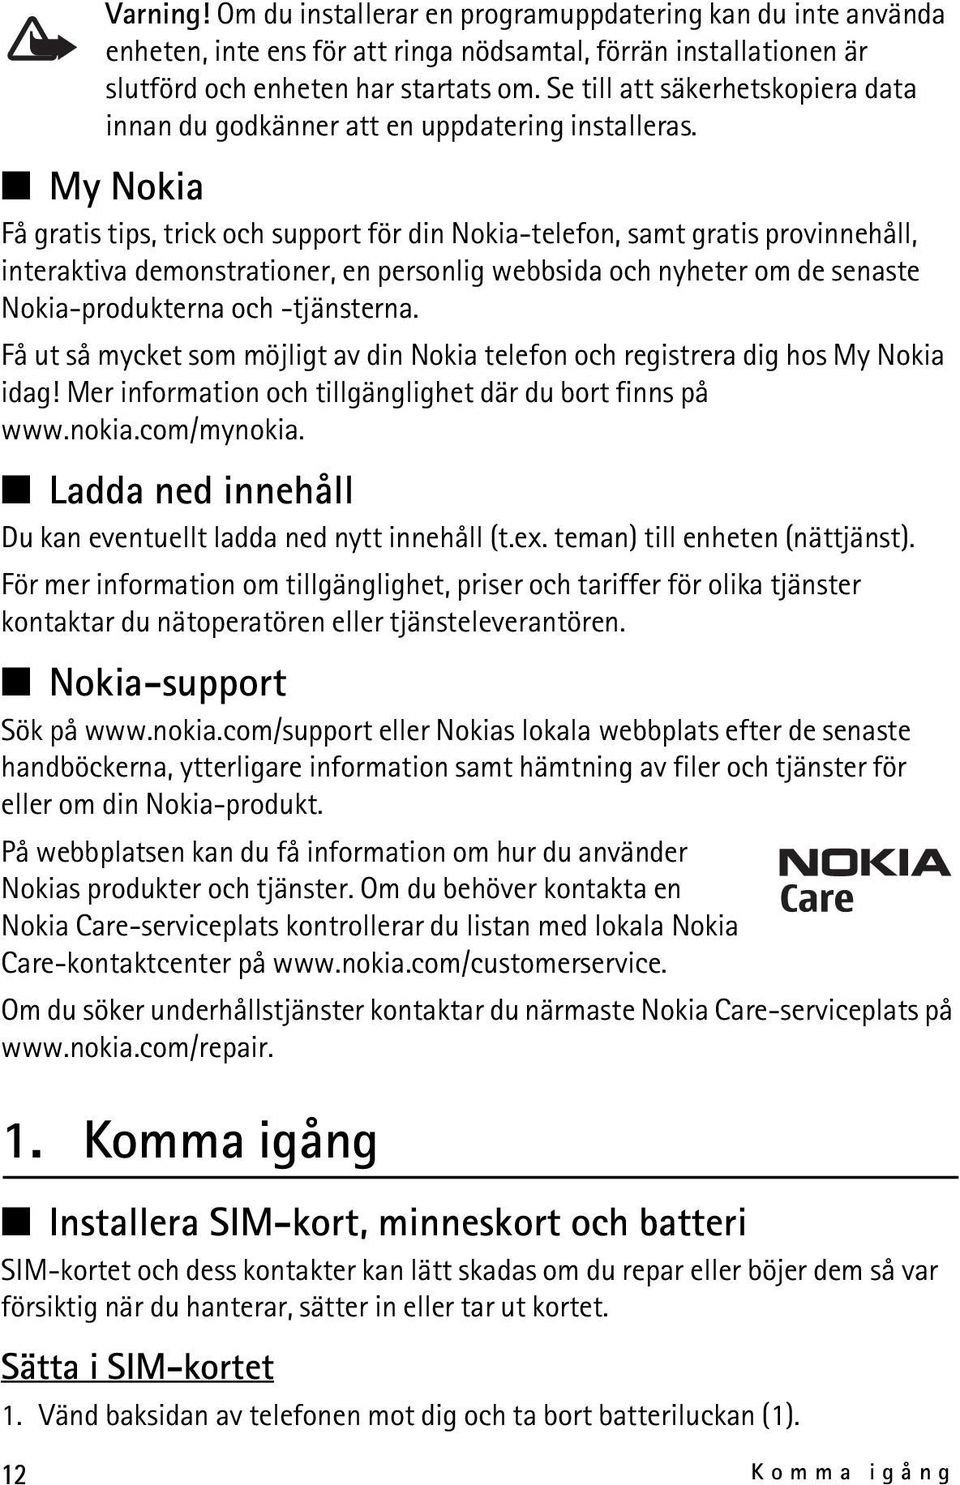 My Nokia Få gratis tips, trick och support för din Nokia-telefon, samt gratis provinnehåll, interaktiva demonstrationer, en personlig webbsida och nyheter om de senaste Nokia-produkterna och